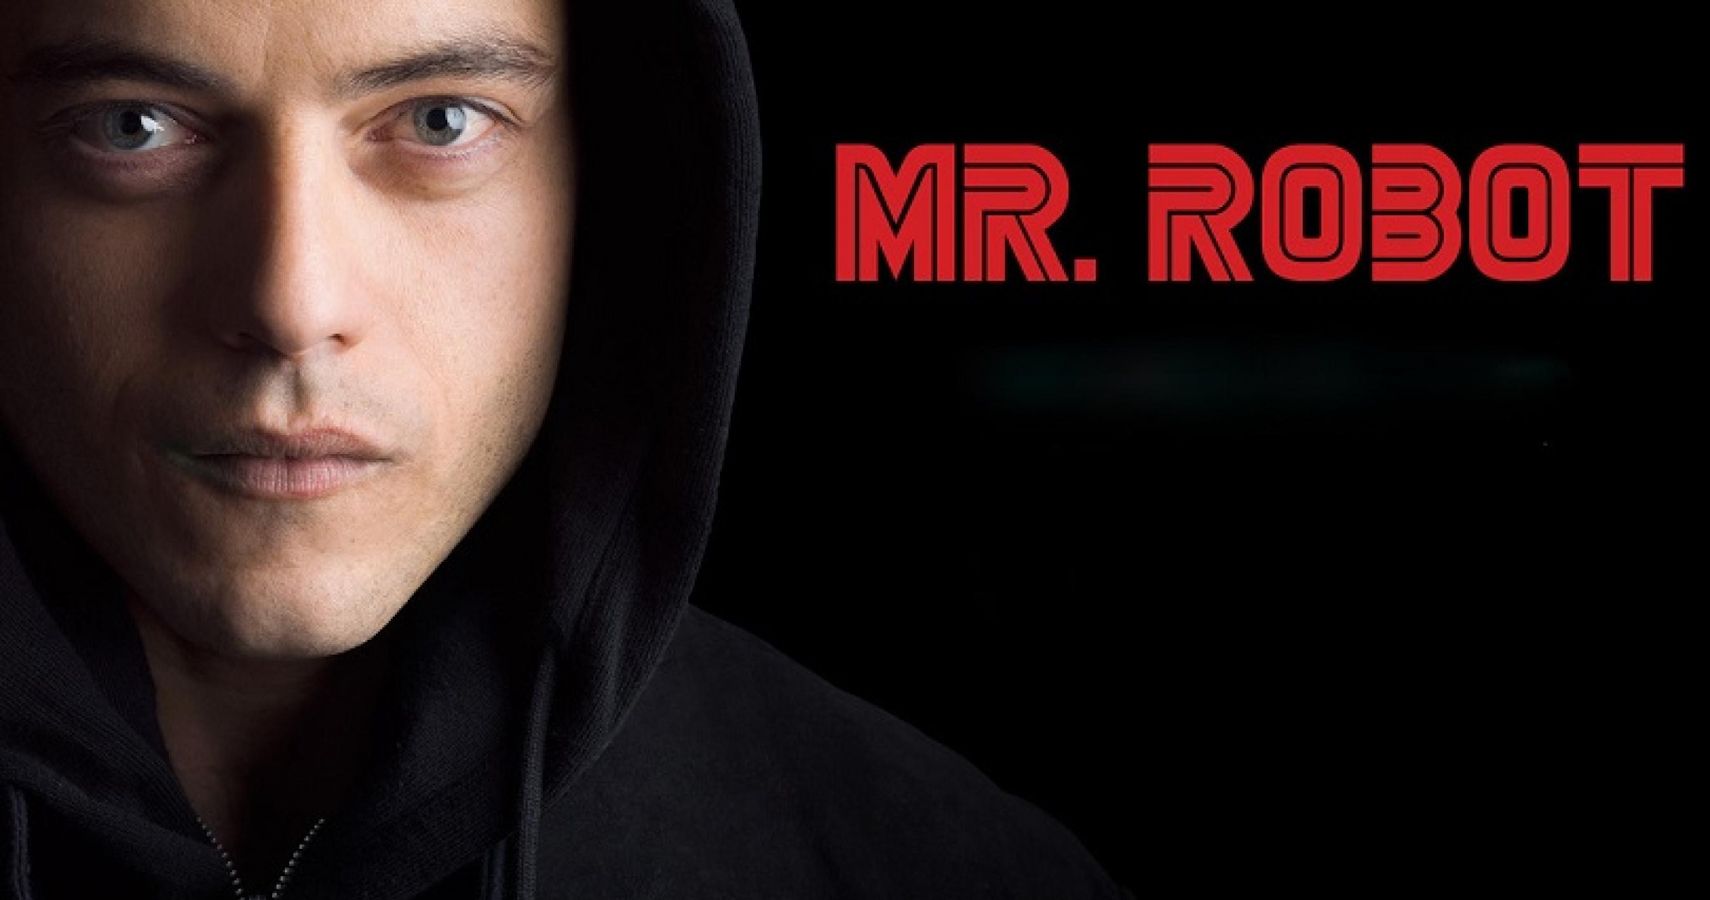 Mr. Robot eps1.8_m1rr0r1ng.qt (TV Episode 2015) - IMDb